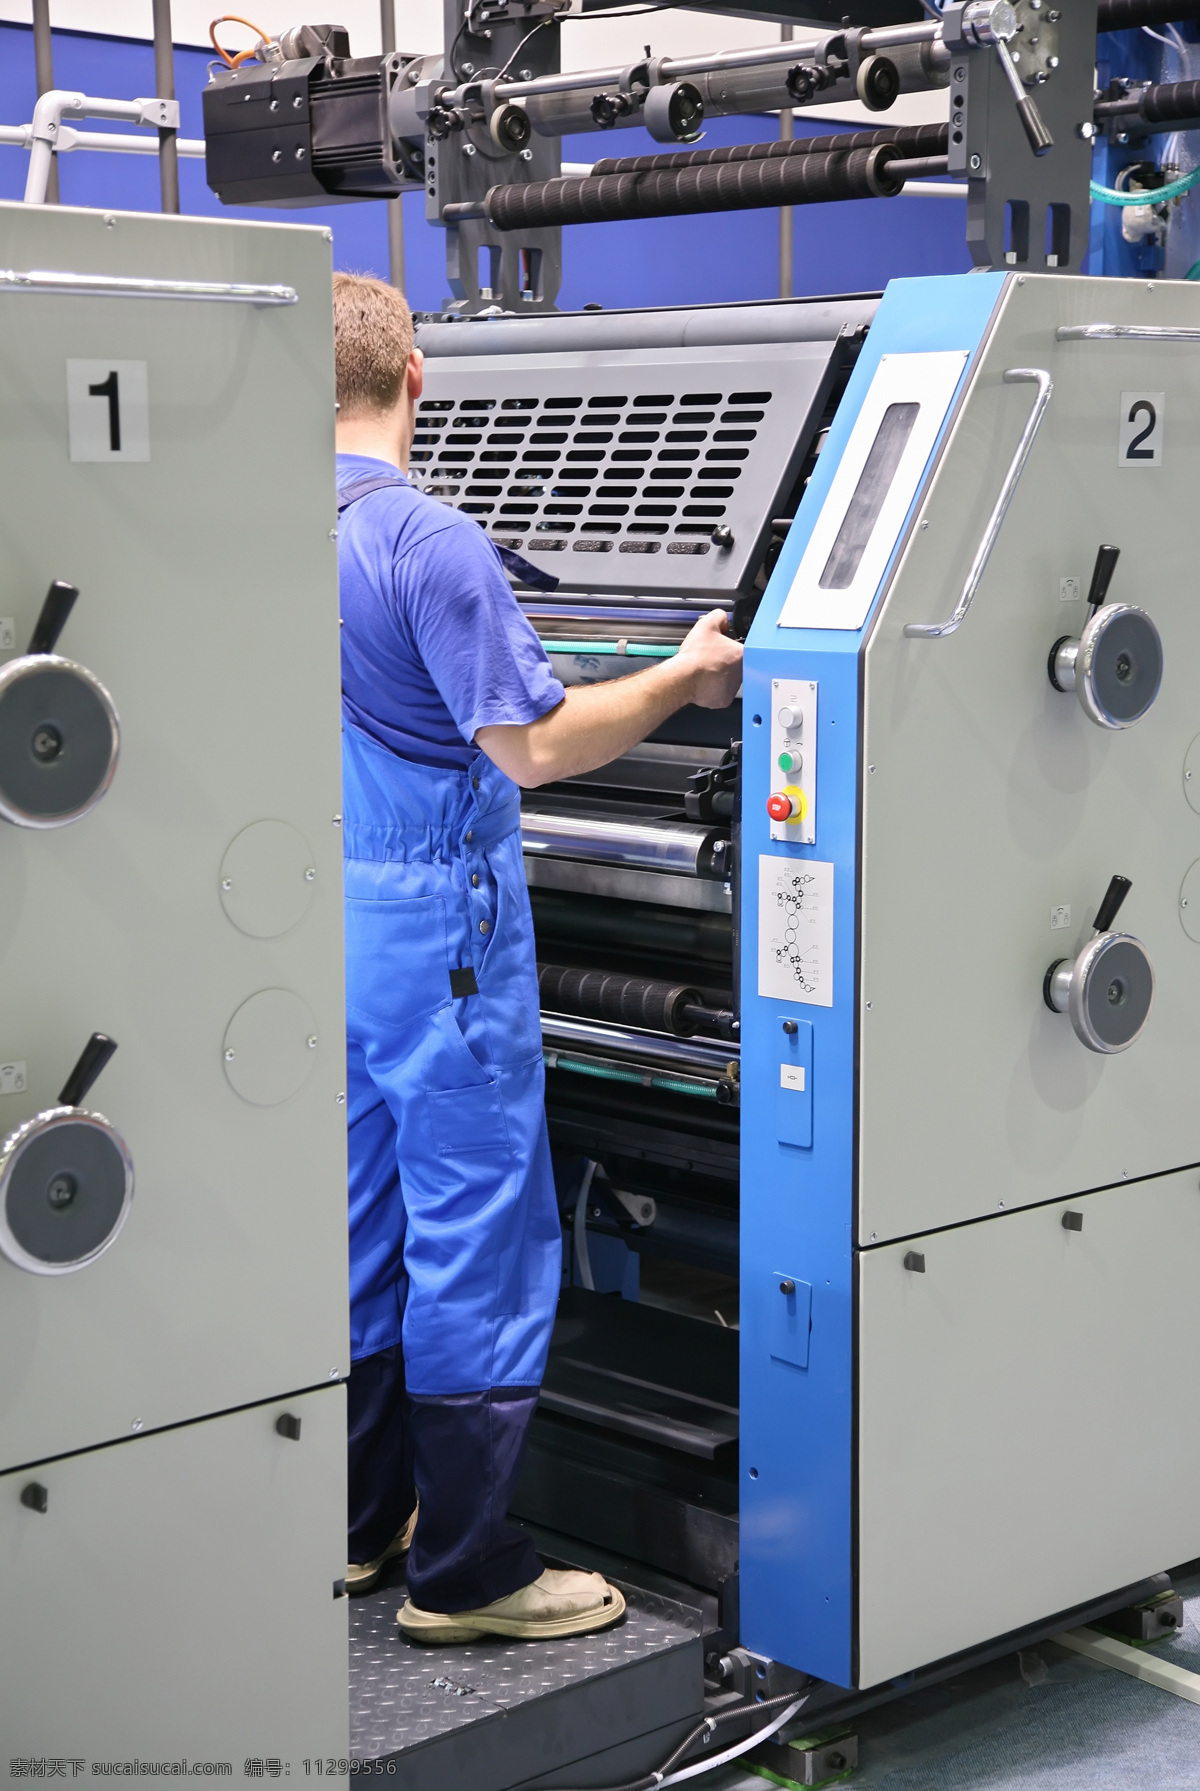 印刷厂 设备 彩色 数码 印刷机 彩色数码 机器 印刷工人 工业生产 现代科技